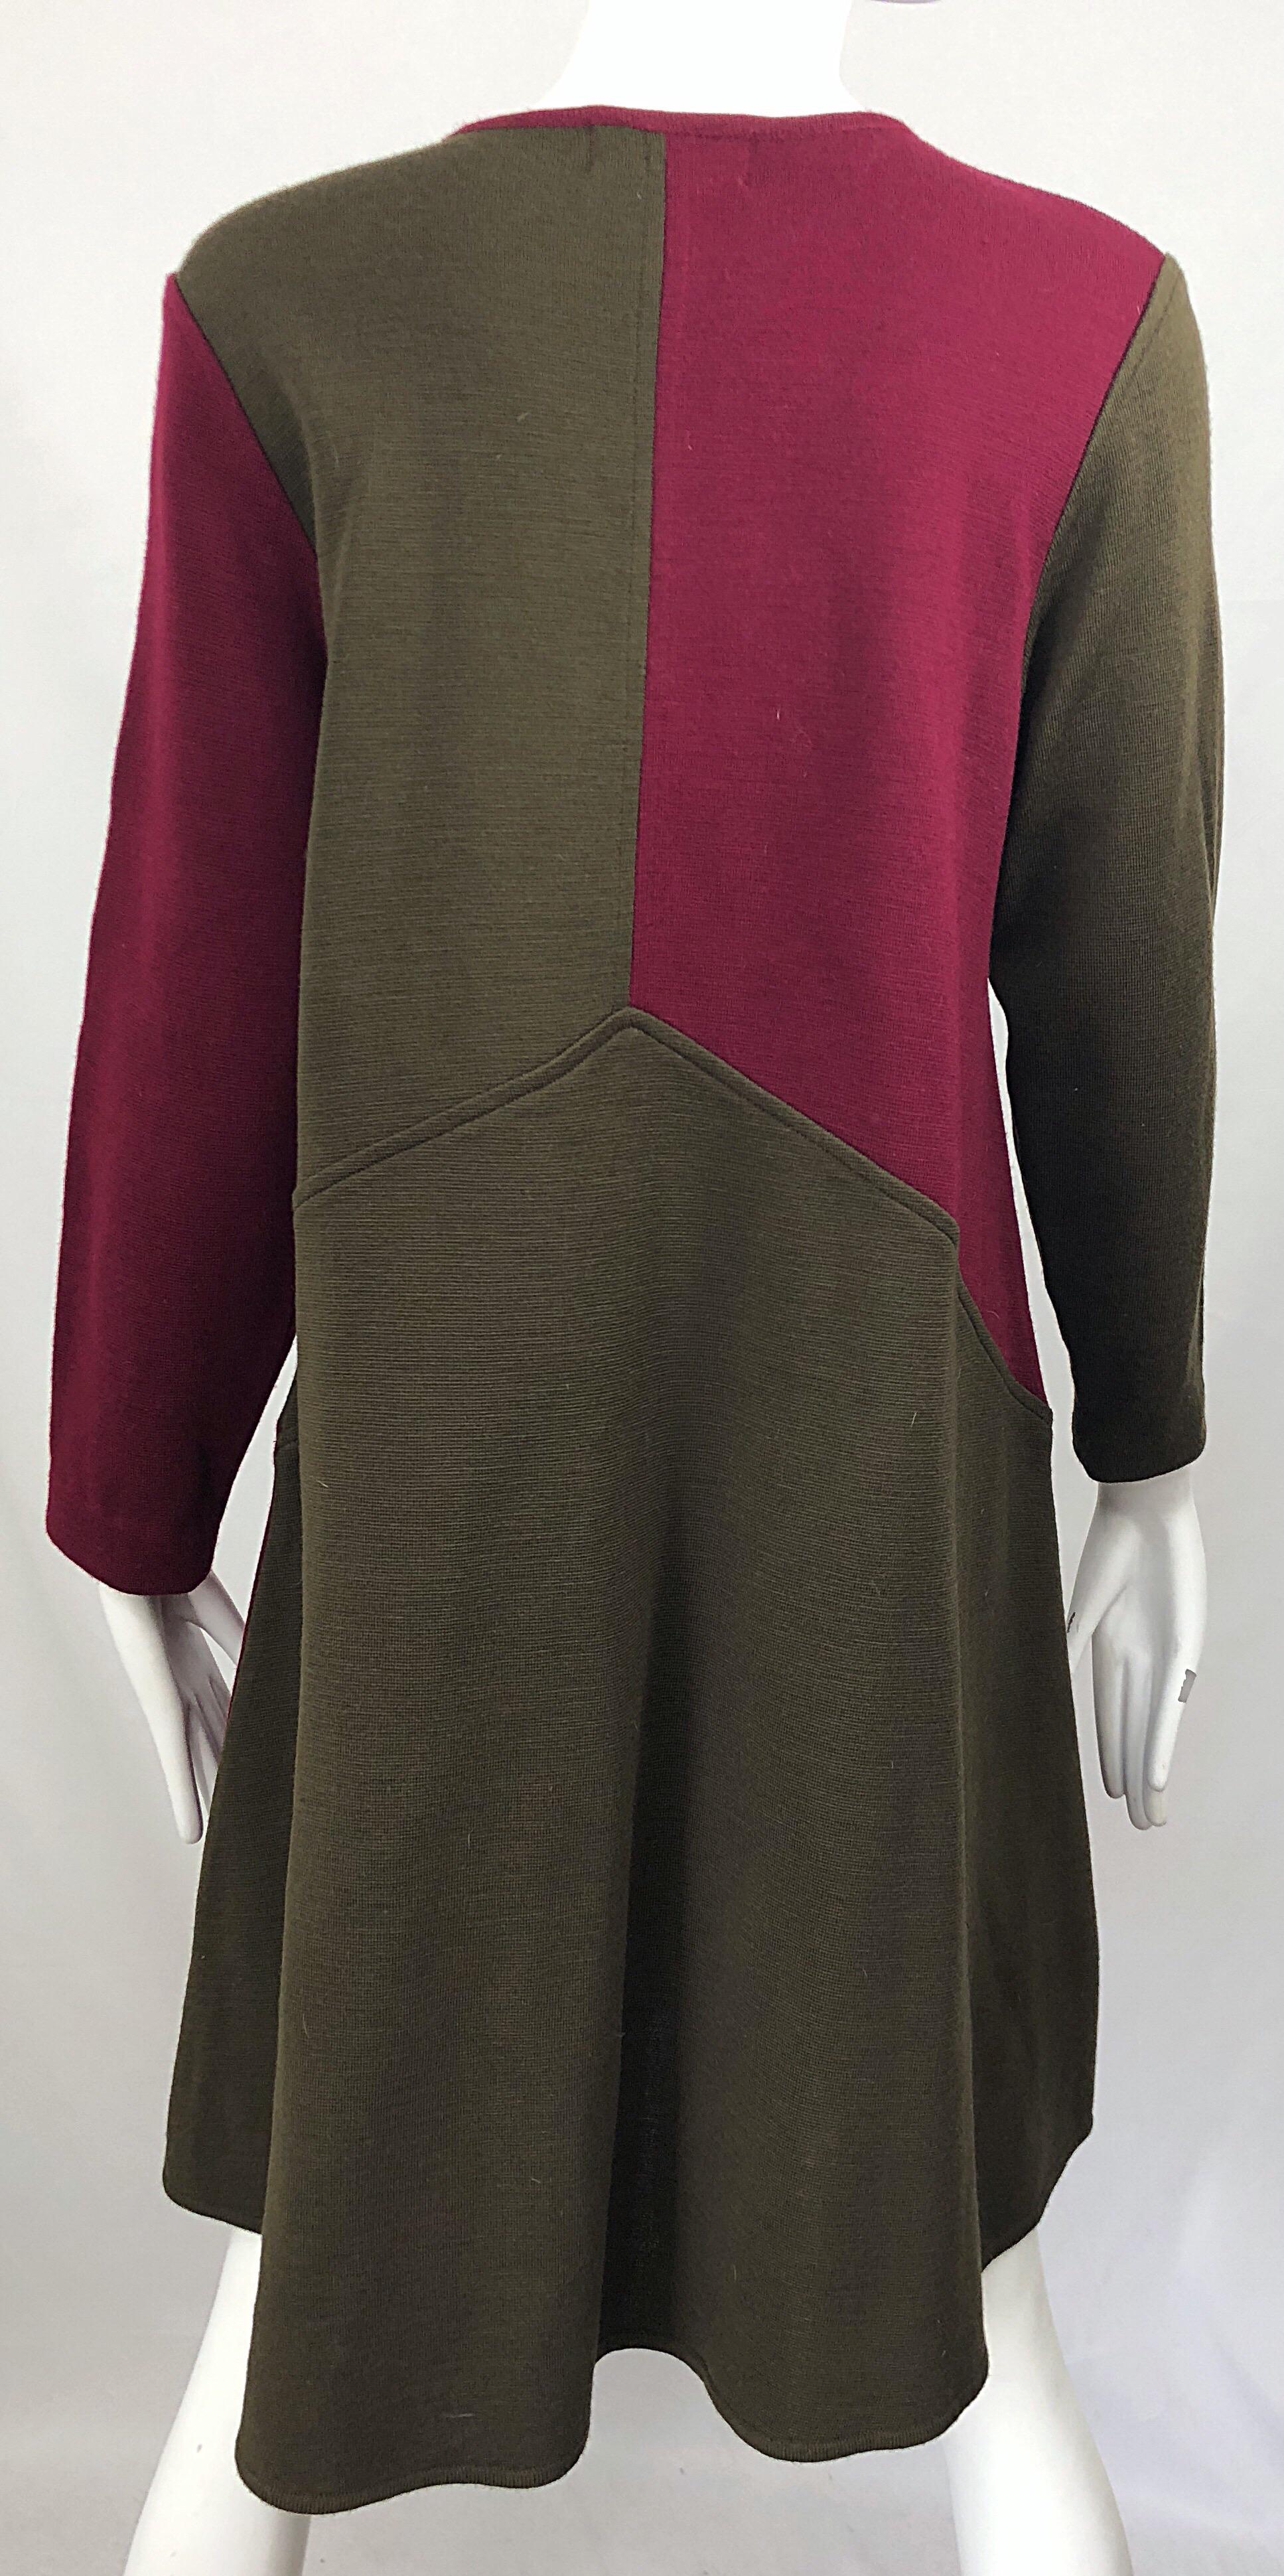 Vintage Harve Benard 1960s Style Maroon Burgundy + Brown Knit Wool Swing Dress For Sale 2